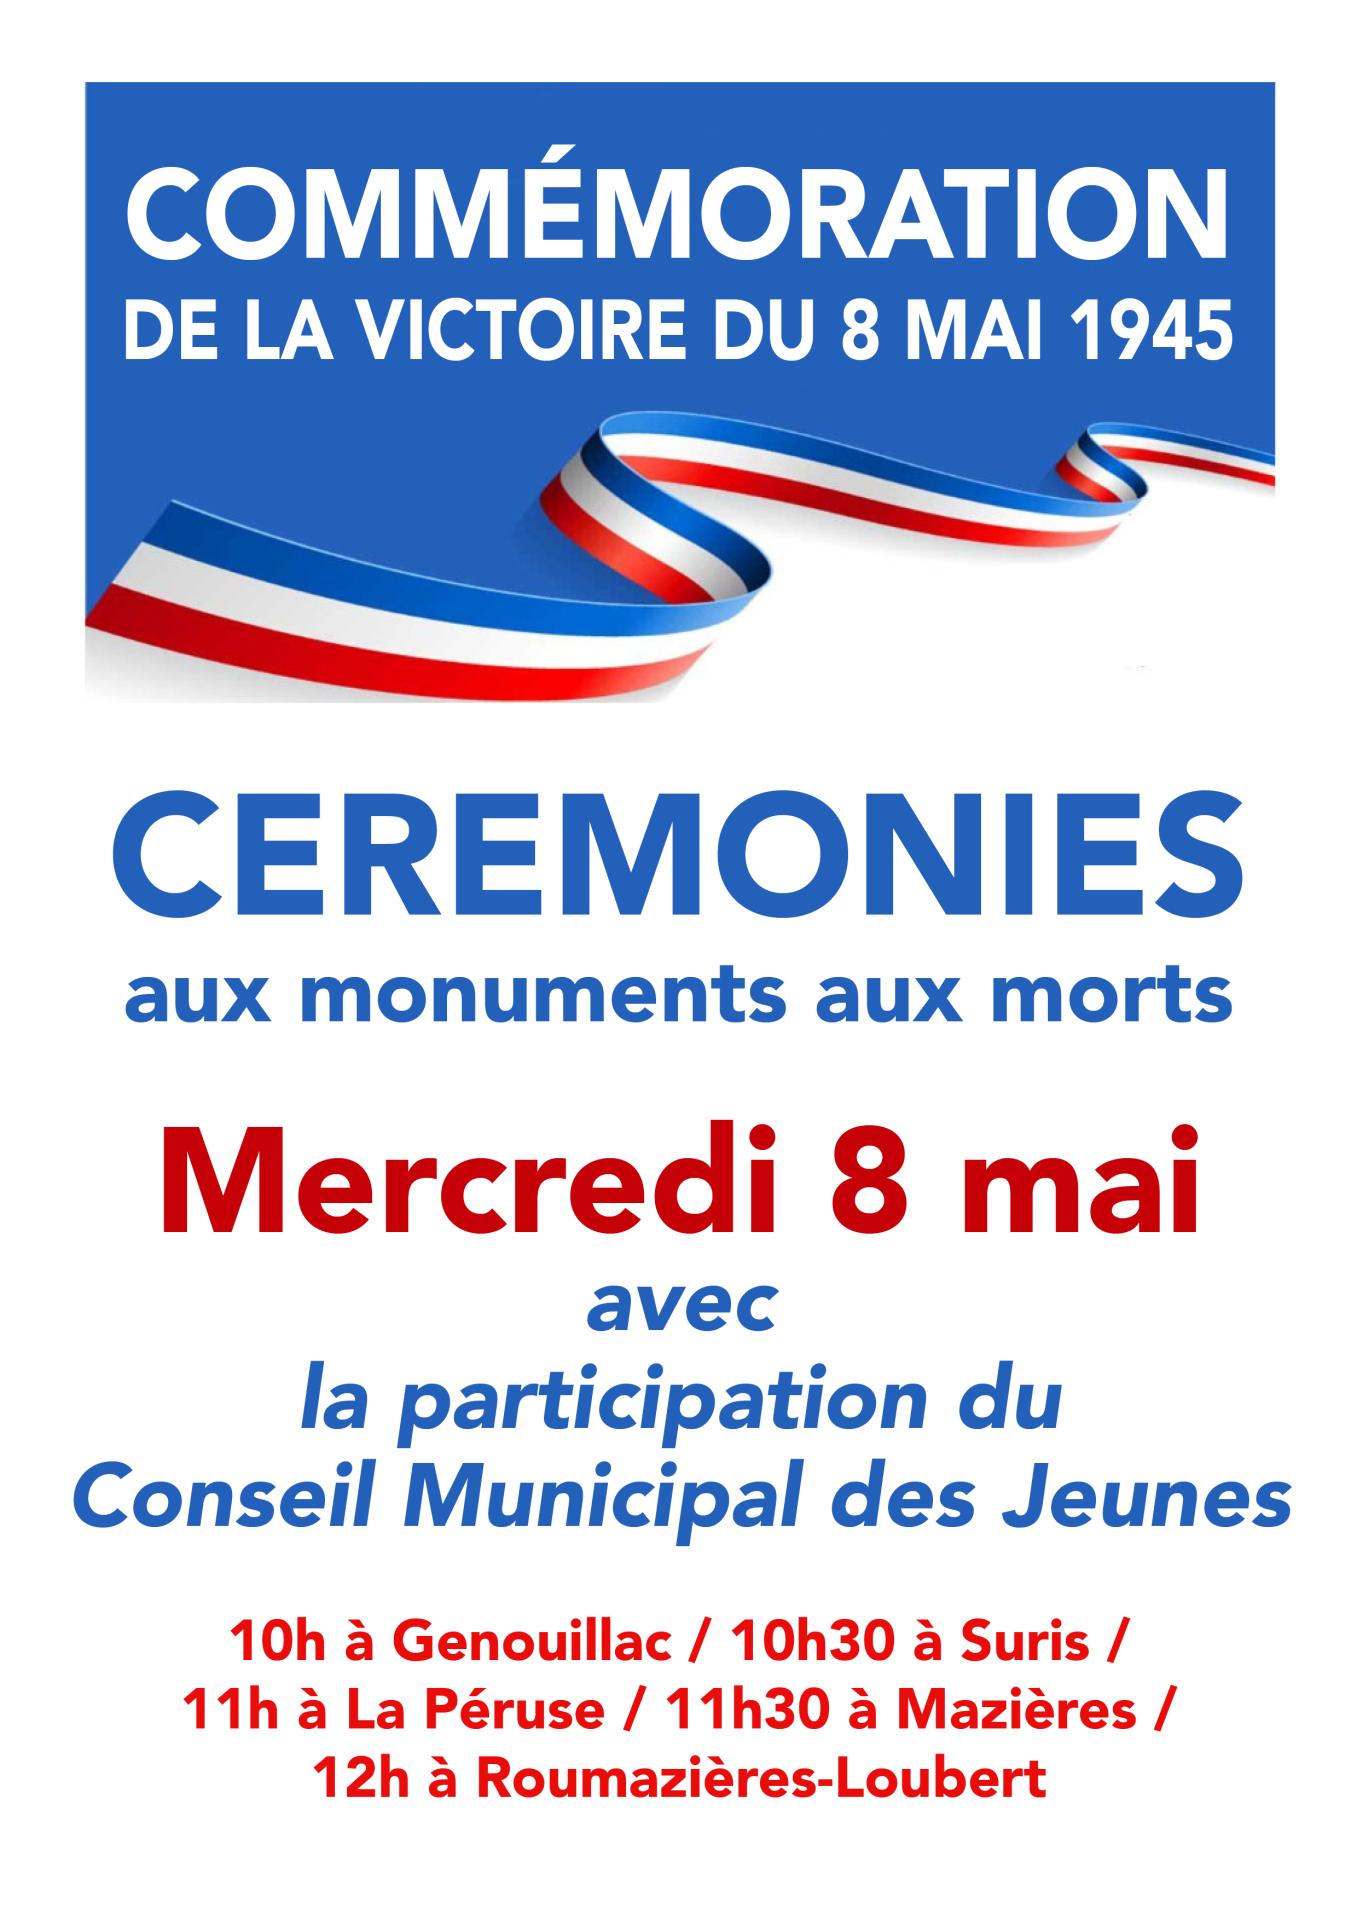 Ceremonies monuments 8 mai